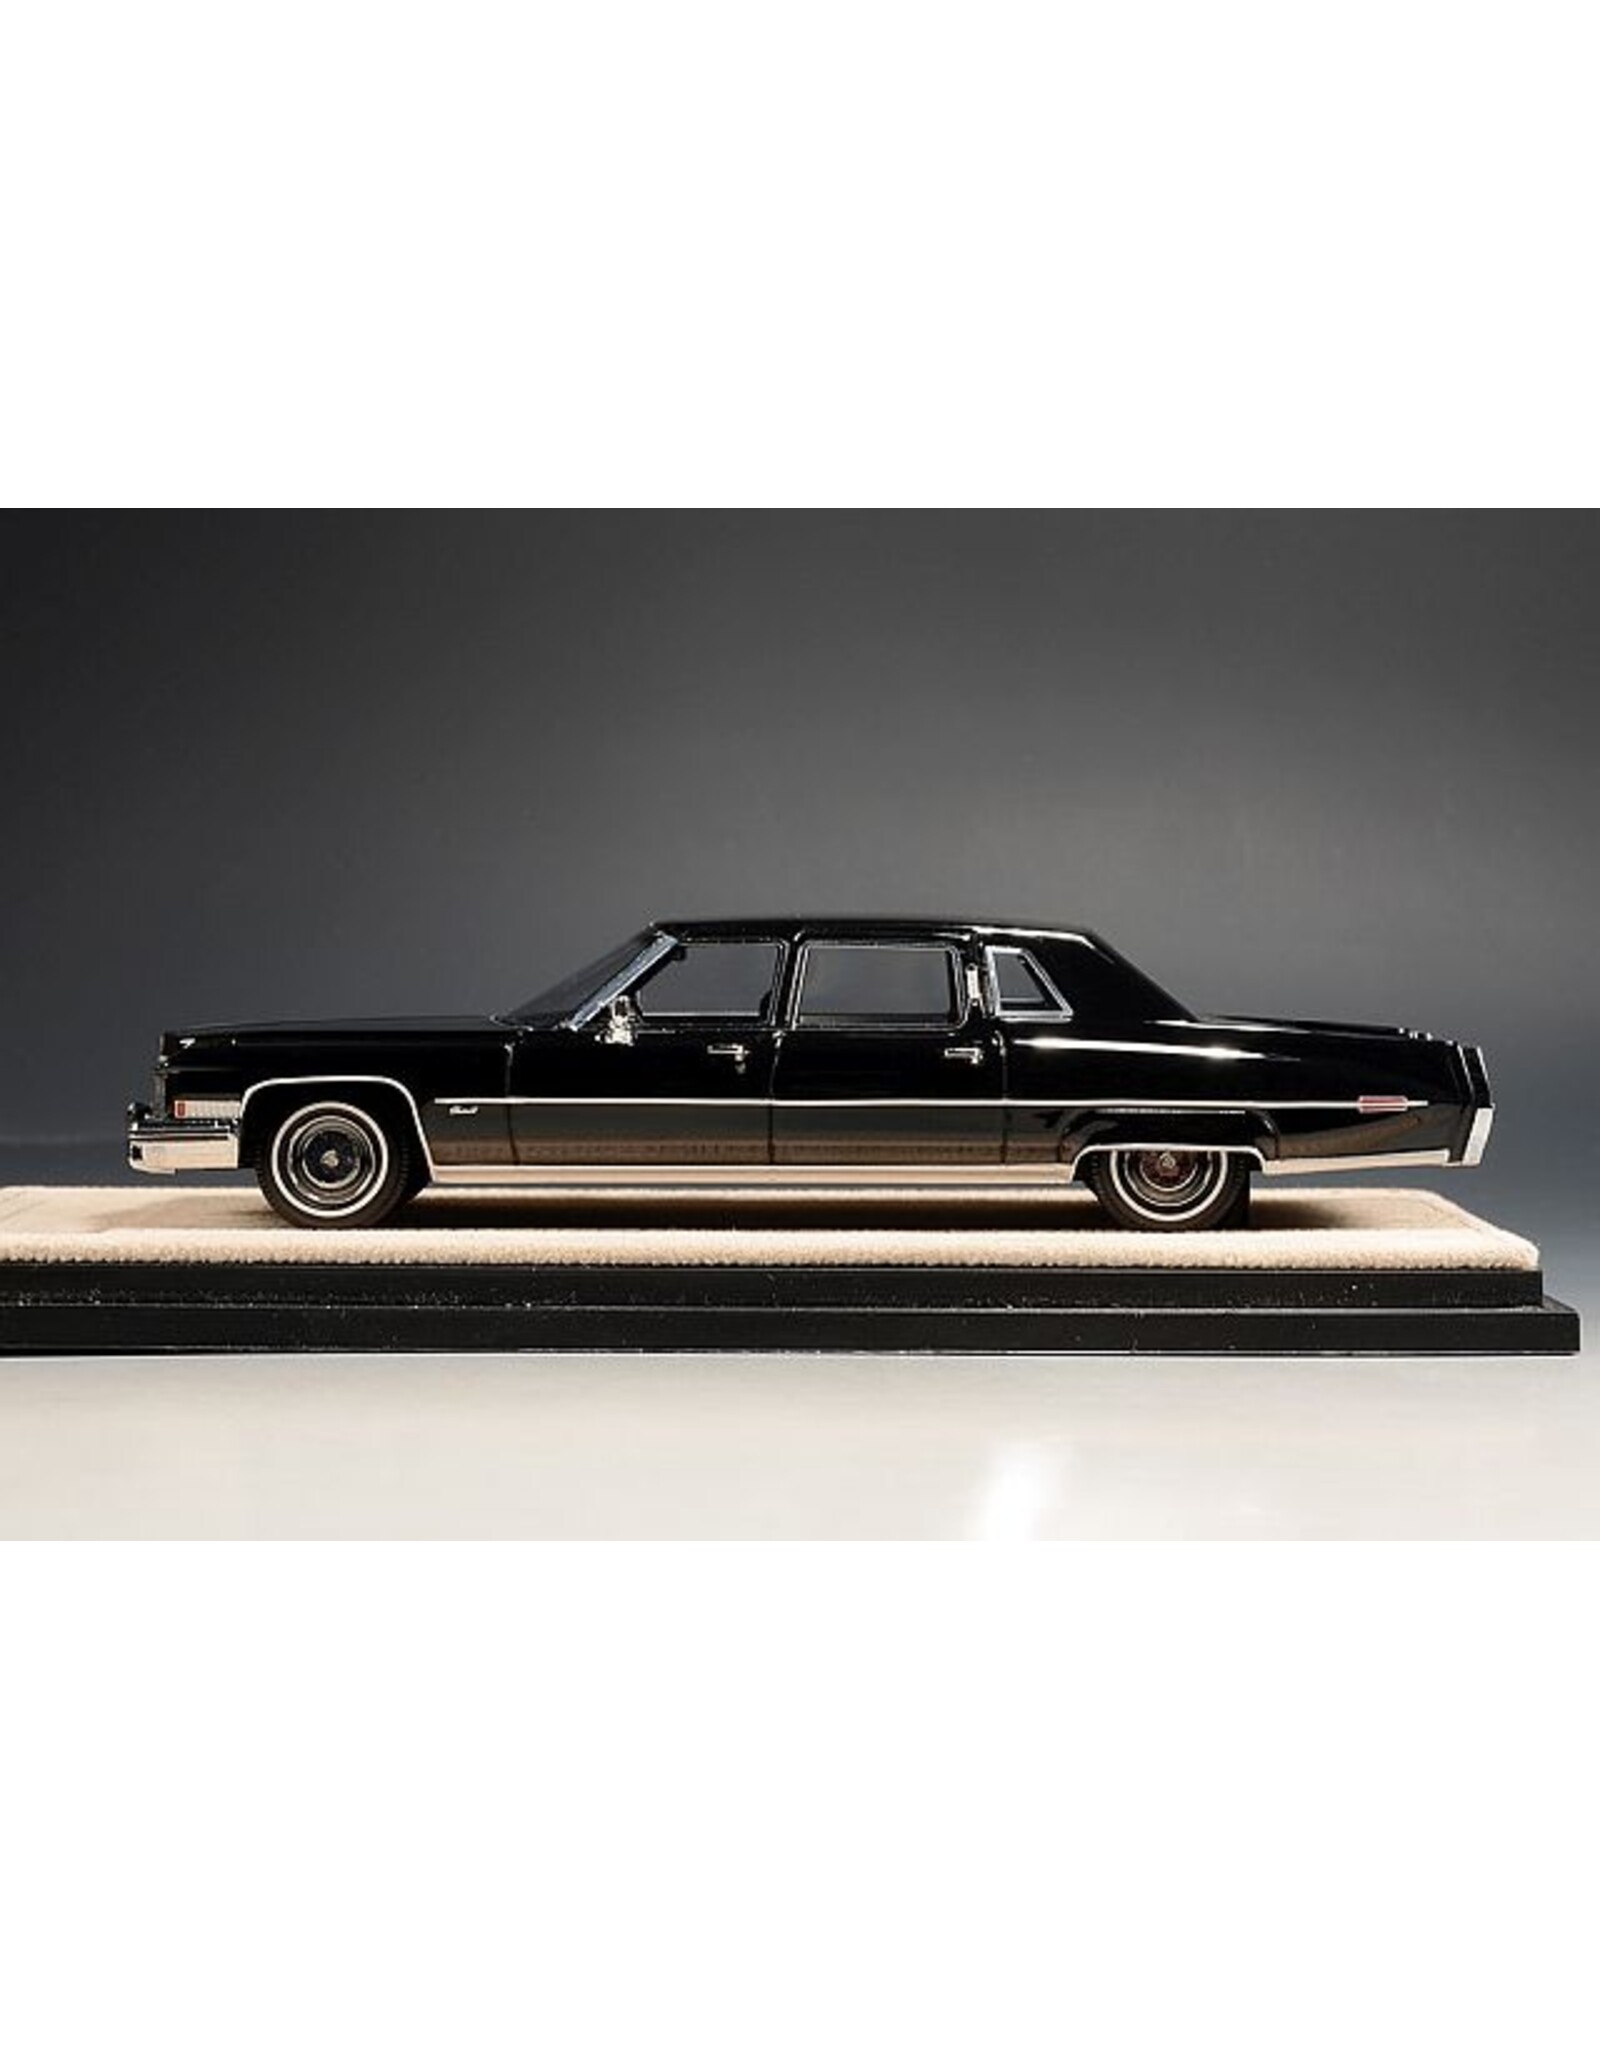 Cadillac(General Motors) Cadillac Fleetwood 75 Limousine(1973)black